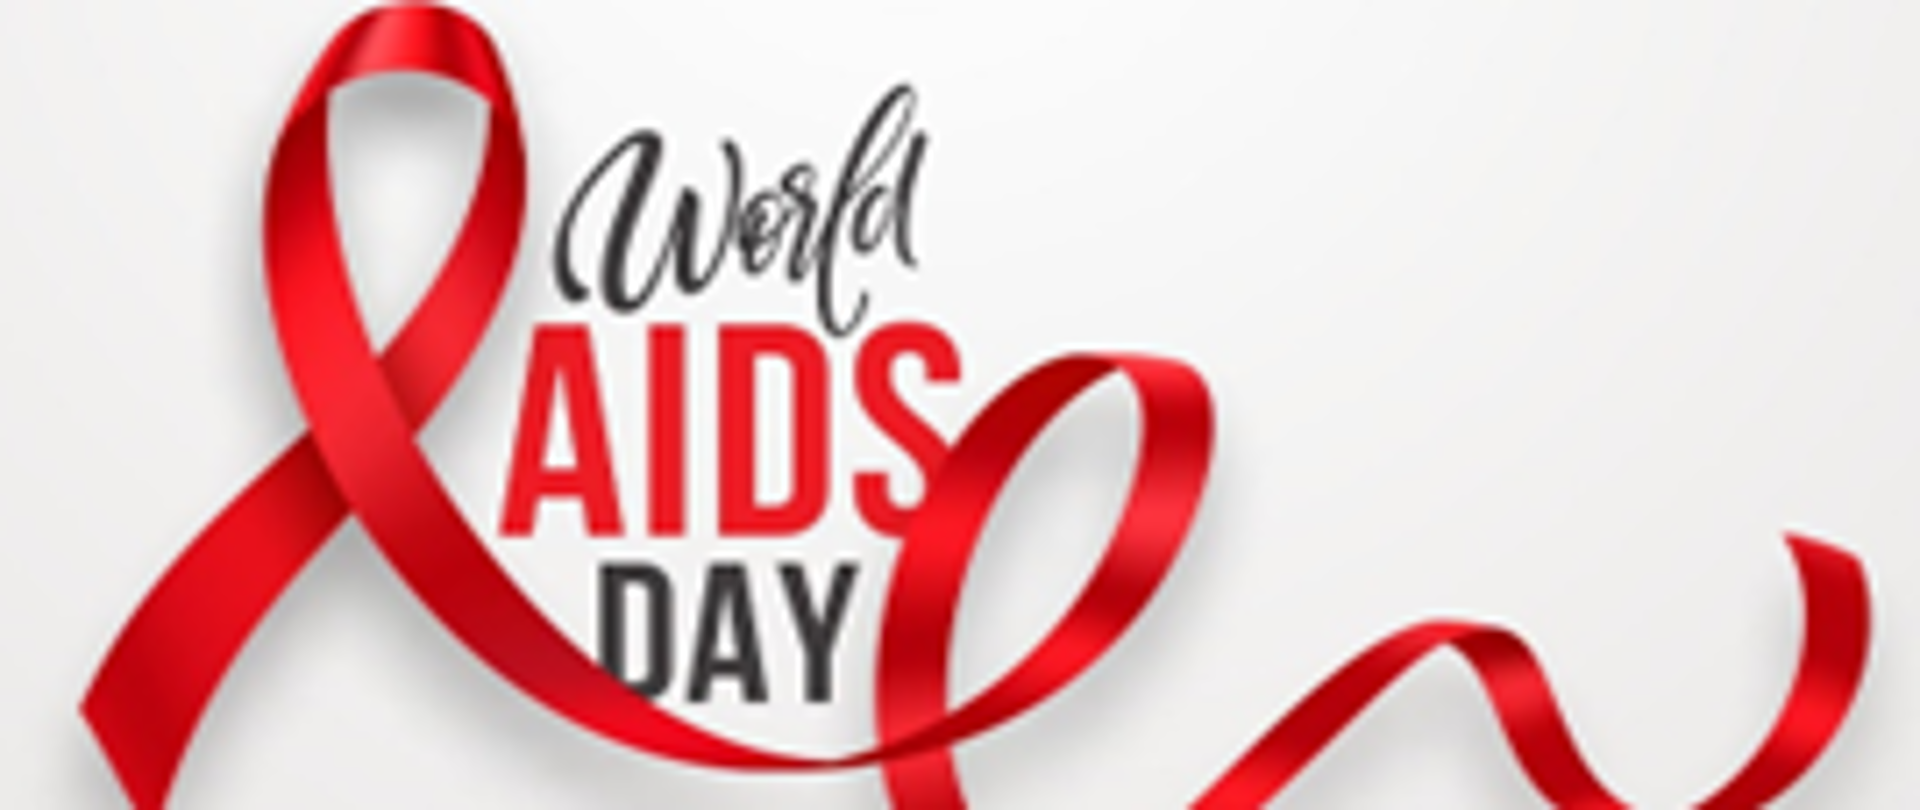 Logo w formacie prostokonta w środku napius World AIDS DAY, W poprzek grafiki czerwona wstążka zwinięta w kila pętli.